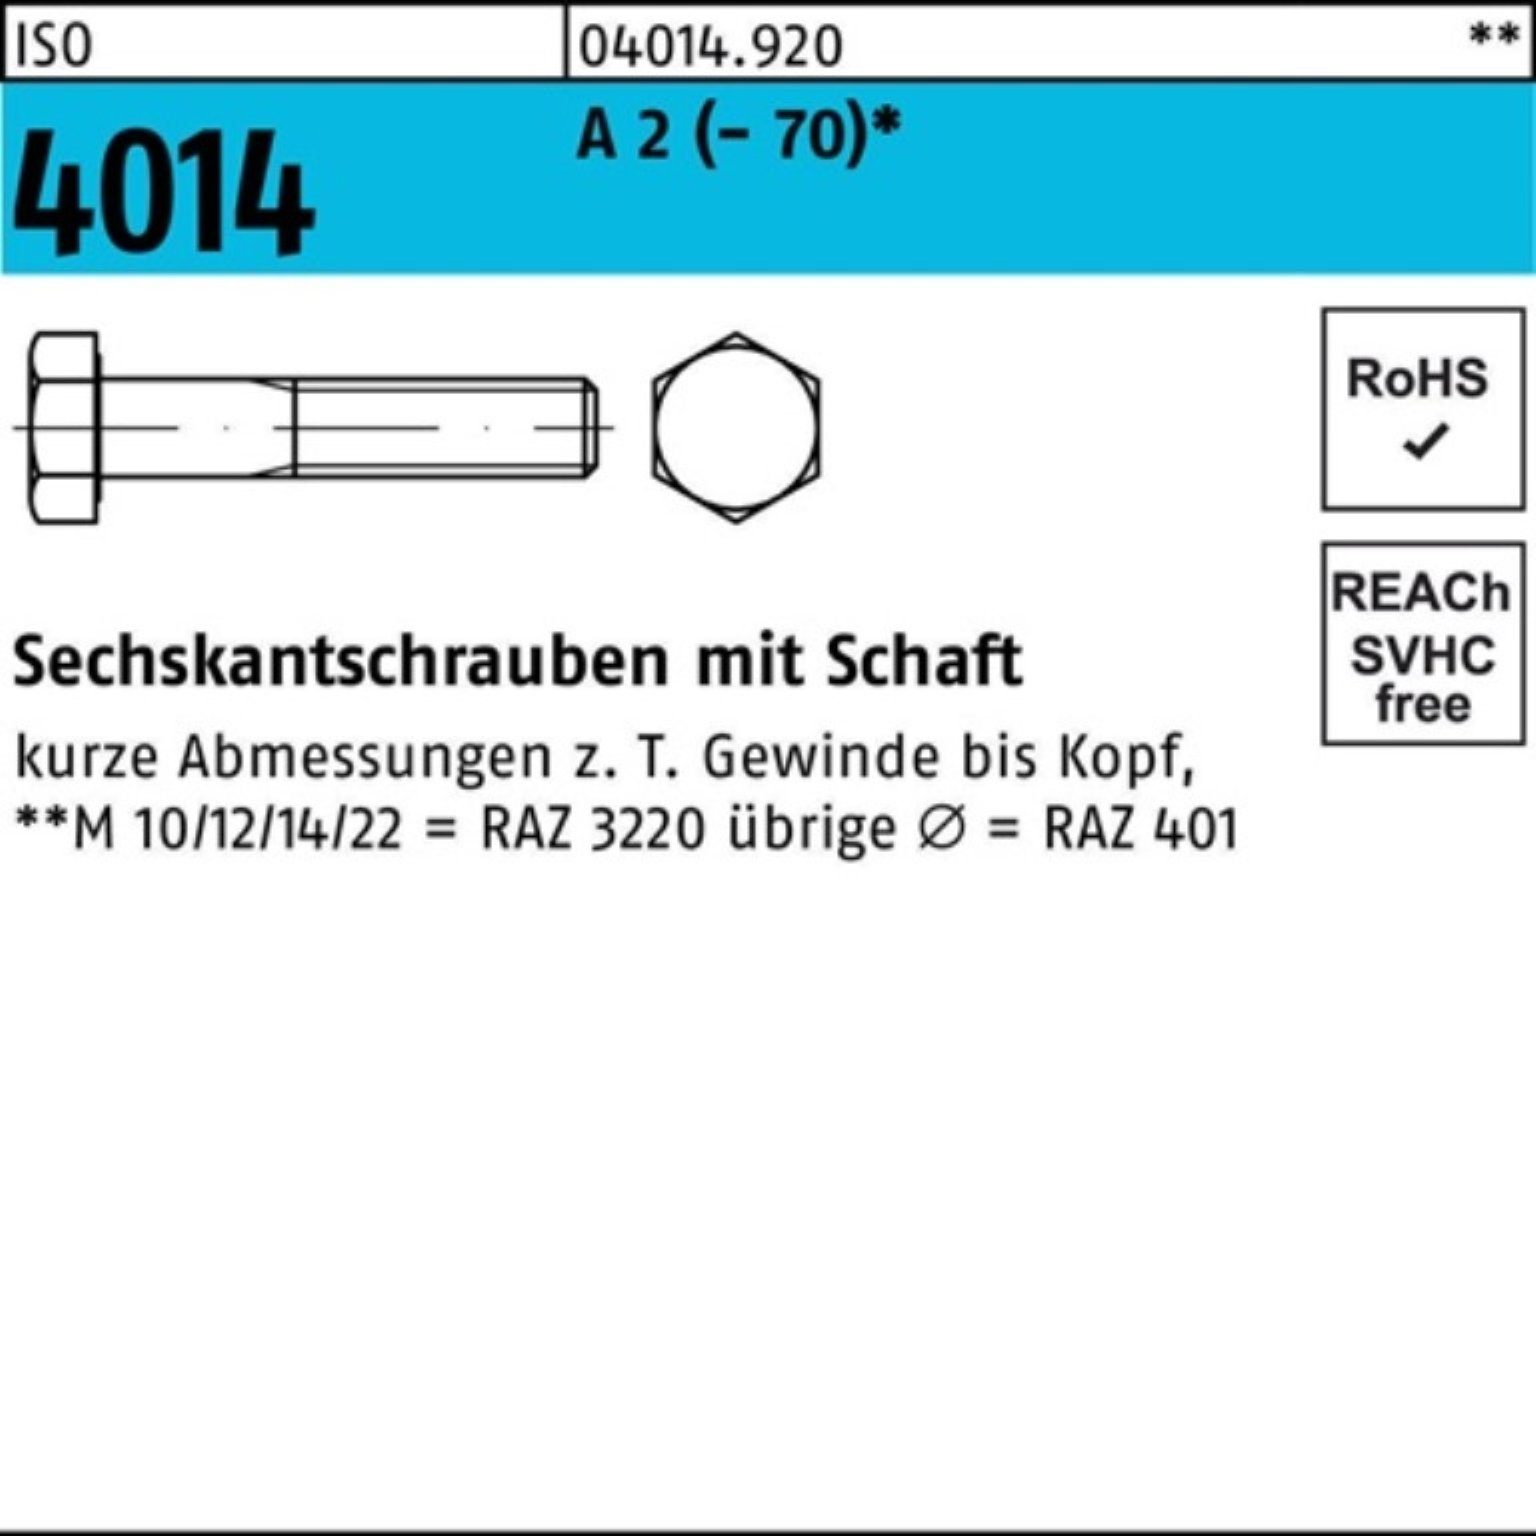 70 ISO 4014 Bufab Sechskantschraube (70) M10x Schaft St Sechskantschraube 2 50 Pack 100er A